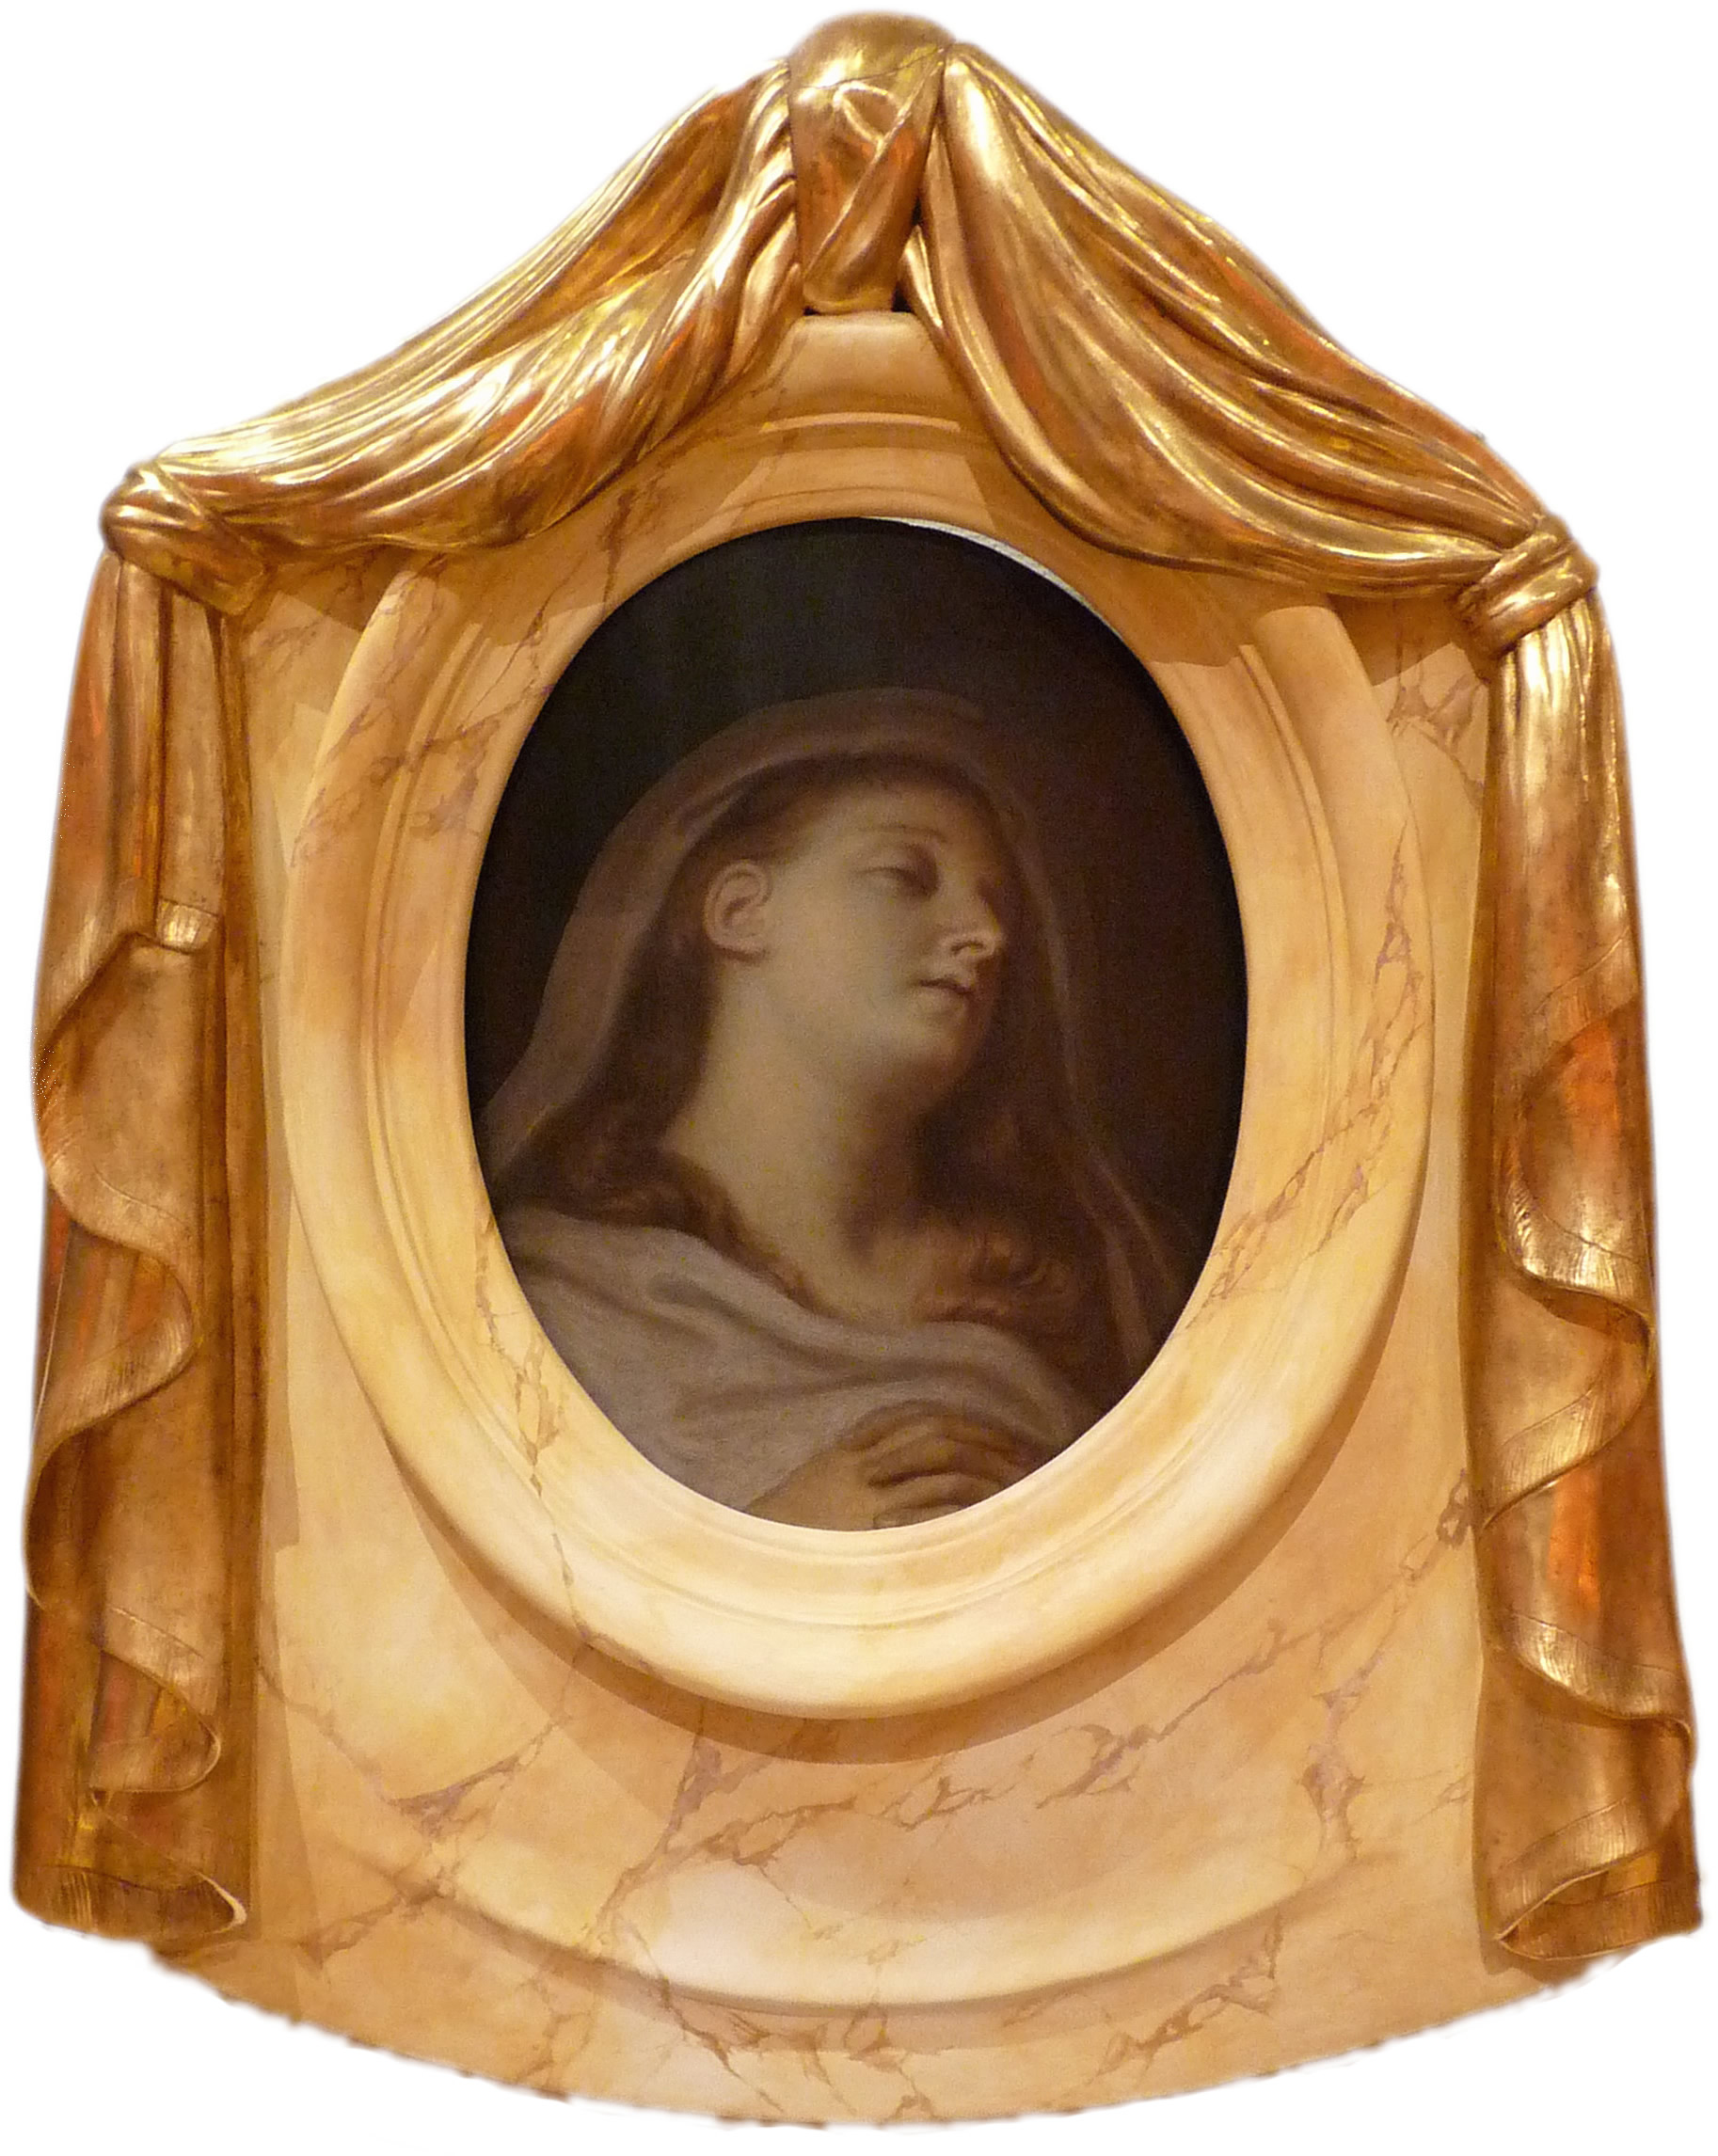 Marbre mortuaire de Henriette Sélincart, par Charles Le Brun